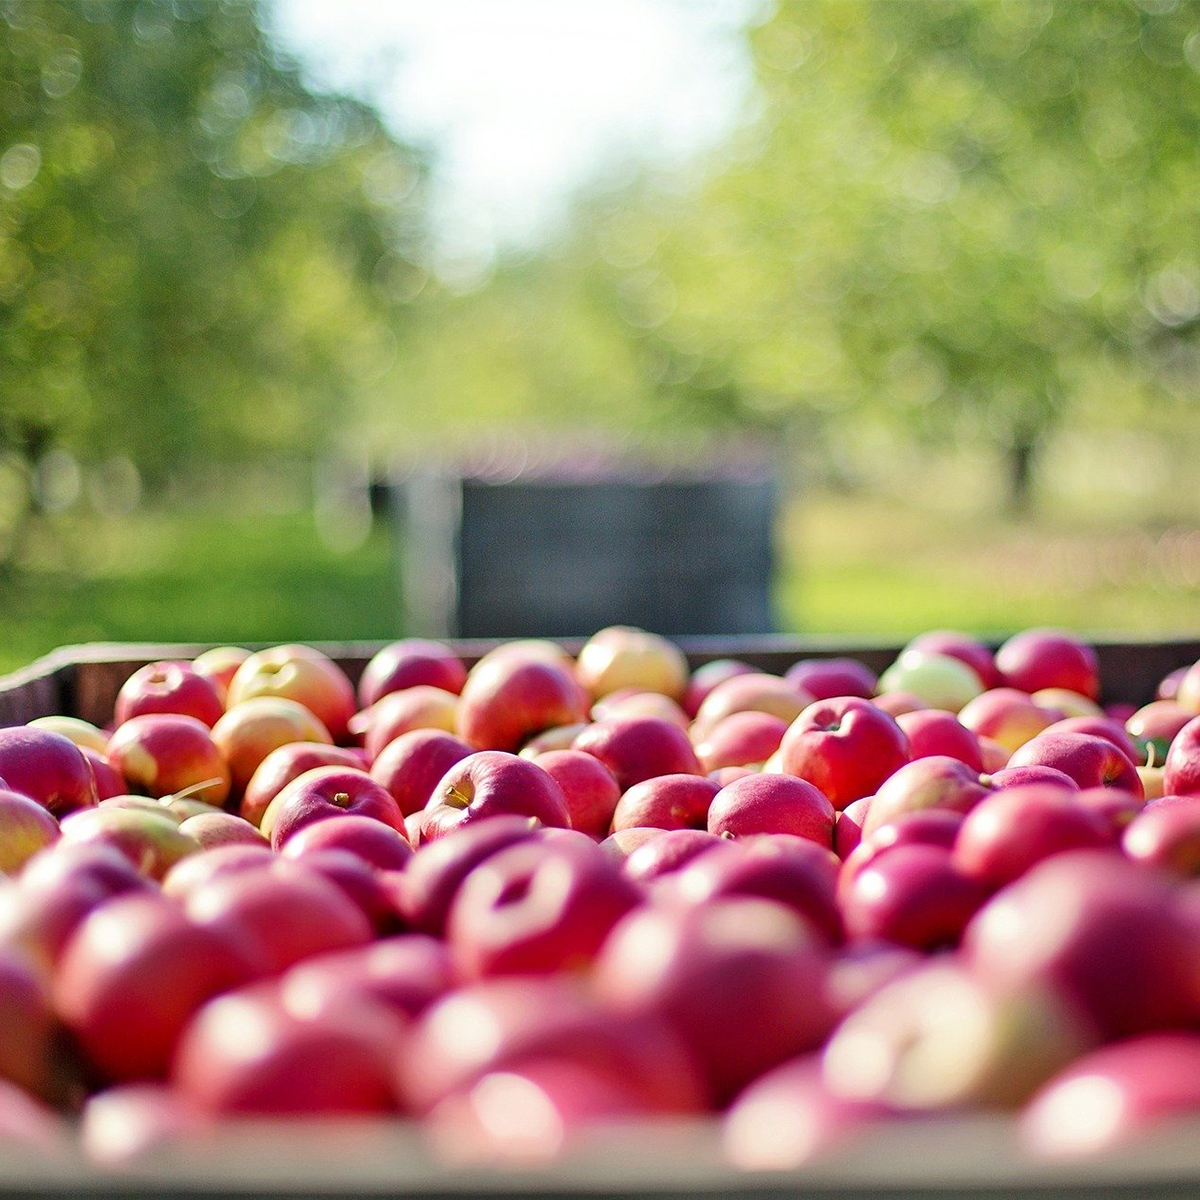 Durham Region Online - venue - macmillan orchards